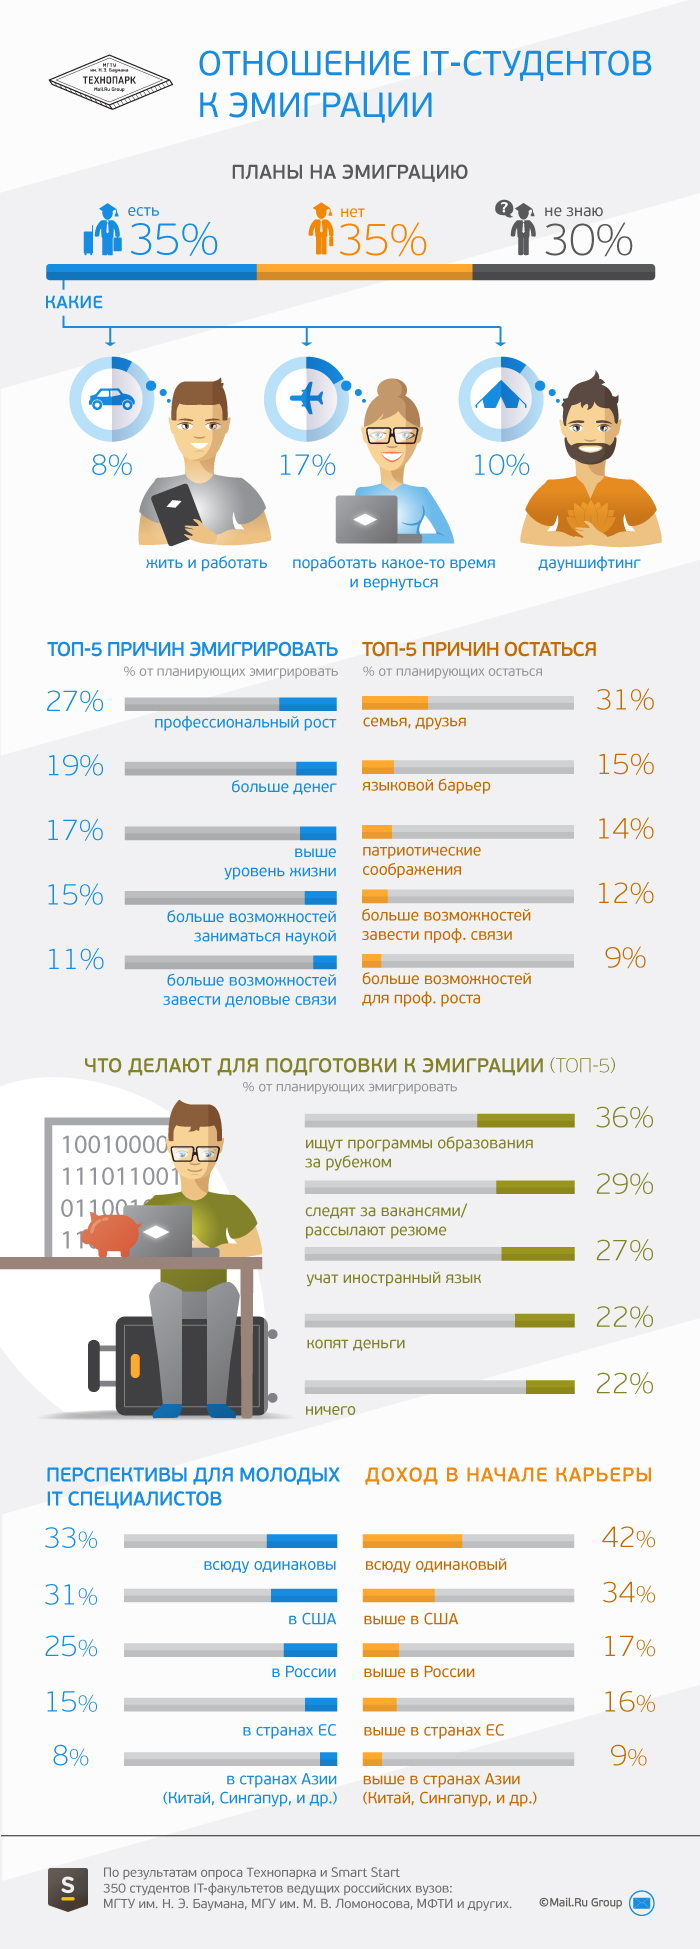 Эмигрировать хотя бы временно хотят 35% российских IT-студентов - 1